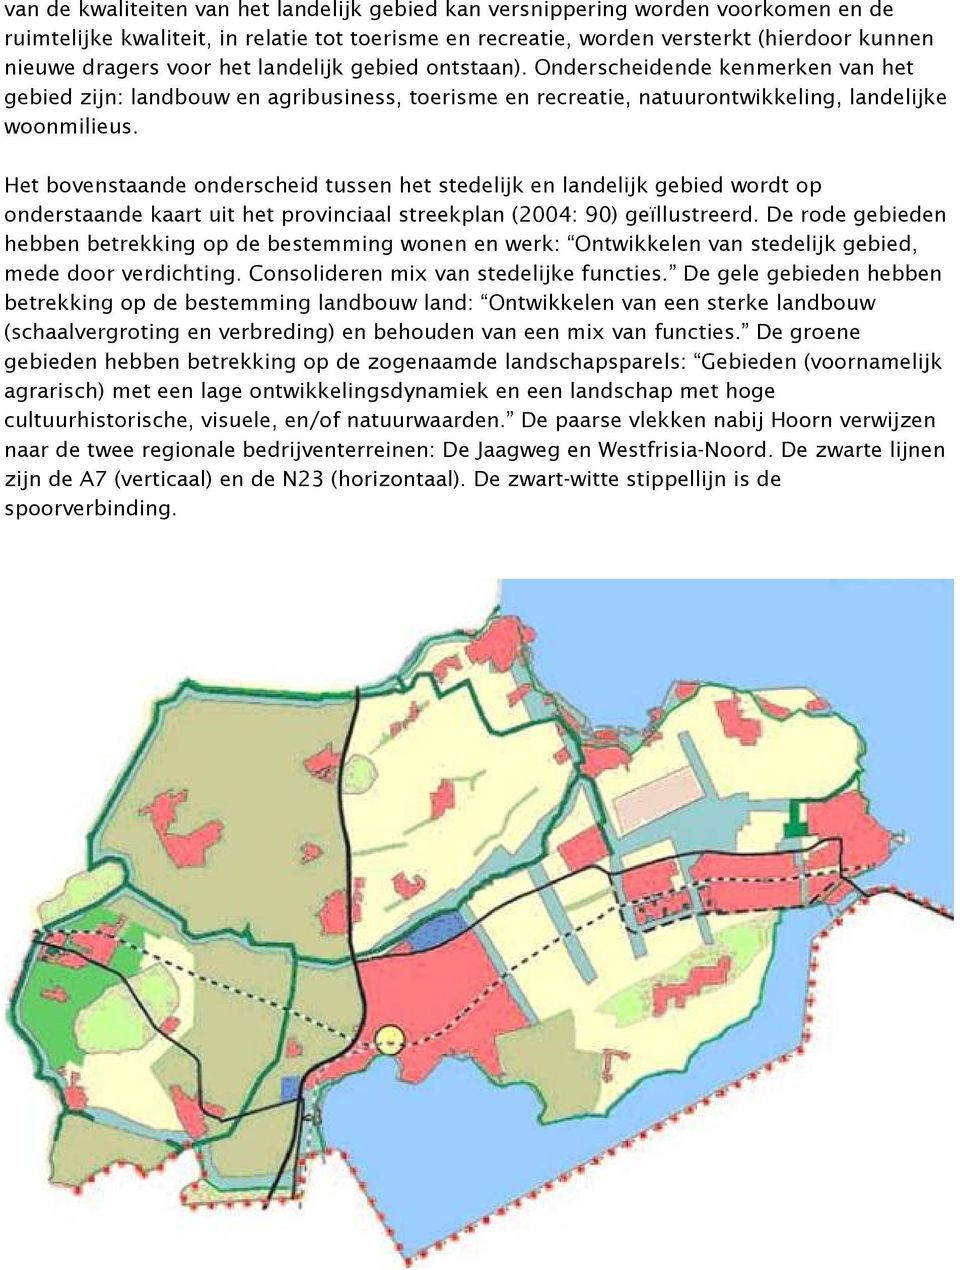 Het bovenstaande onderscheid tussen het stedelijk en landelijk gebied wordt op onderstaande kaart uit het provinciaal streekplan (2004: 90) geïllustreerd.